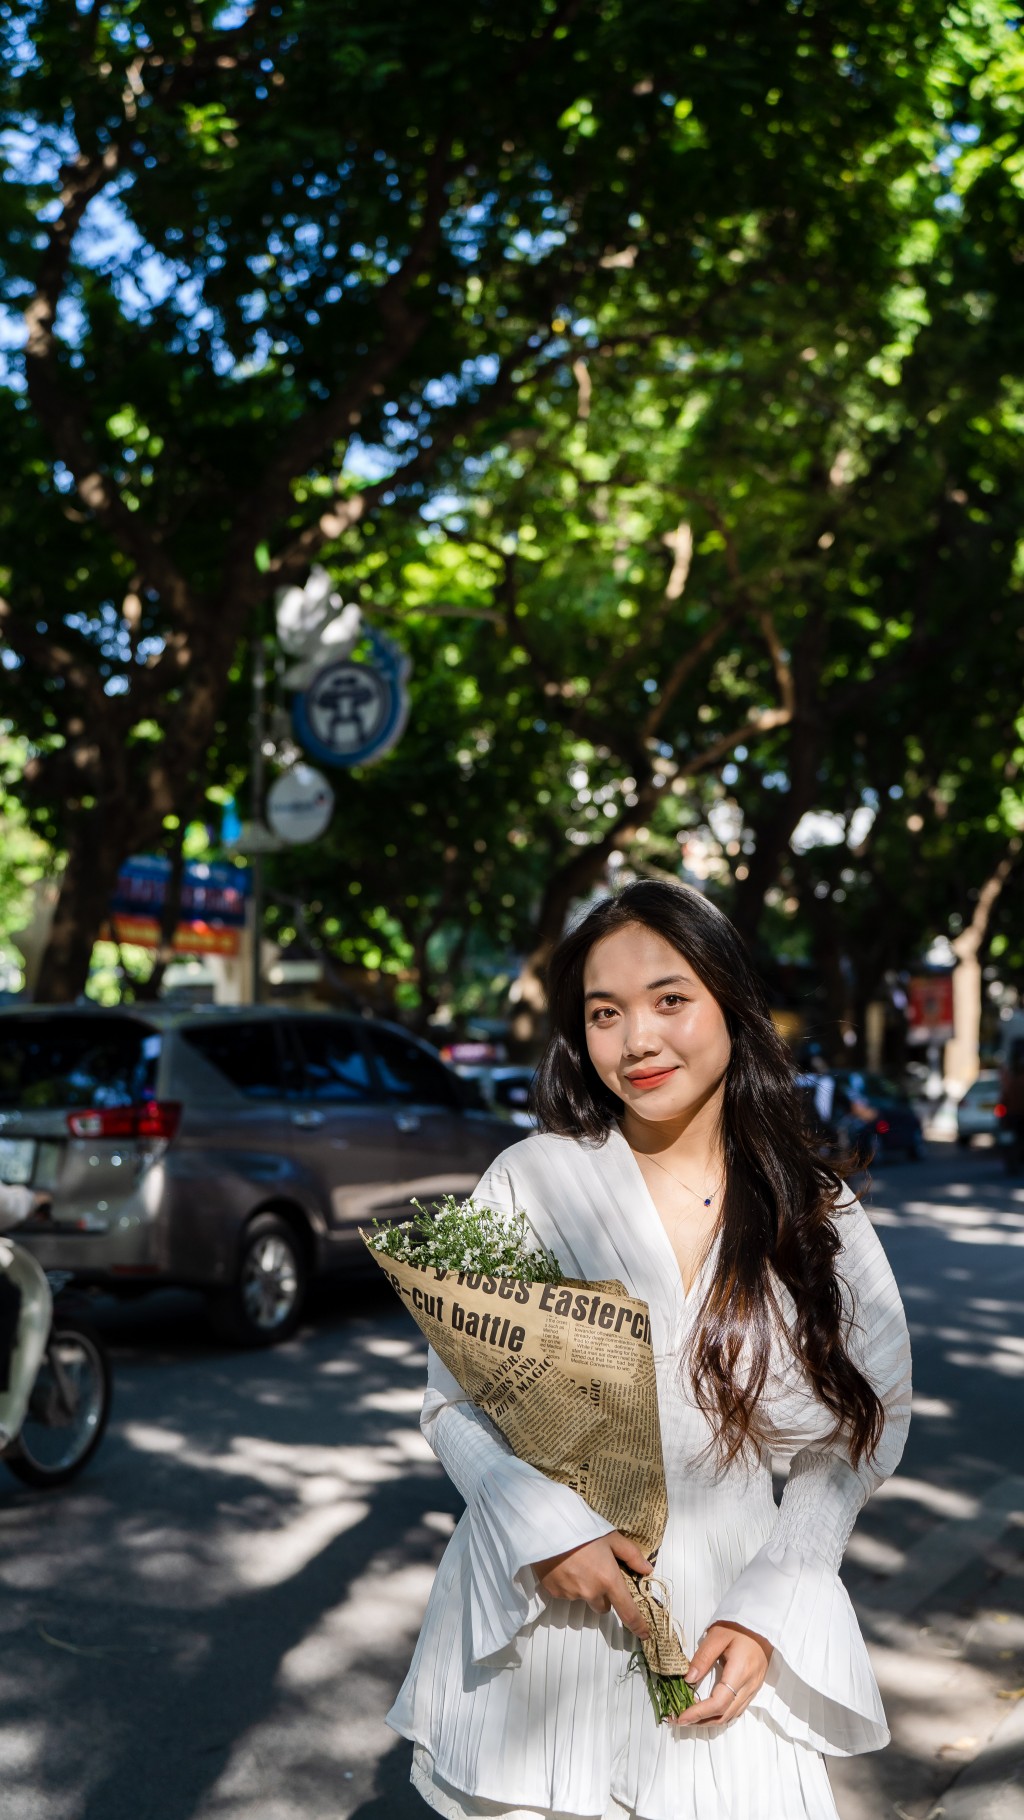 Chụp ảnh áo dài tại Đường Phan Đình Phùng năm 2023 - Hướng dẫn và lời khuyên